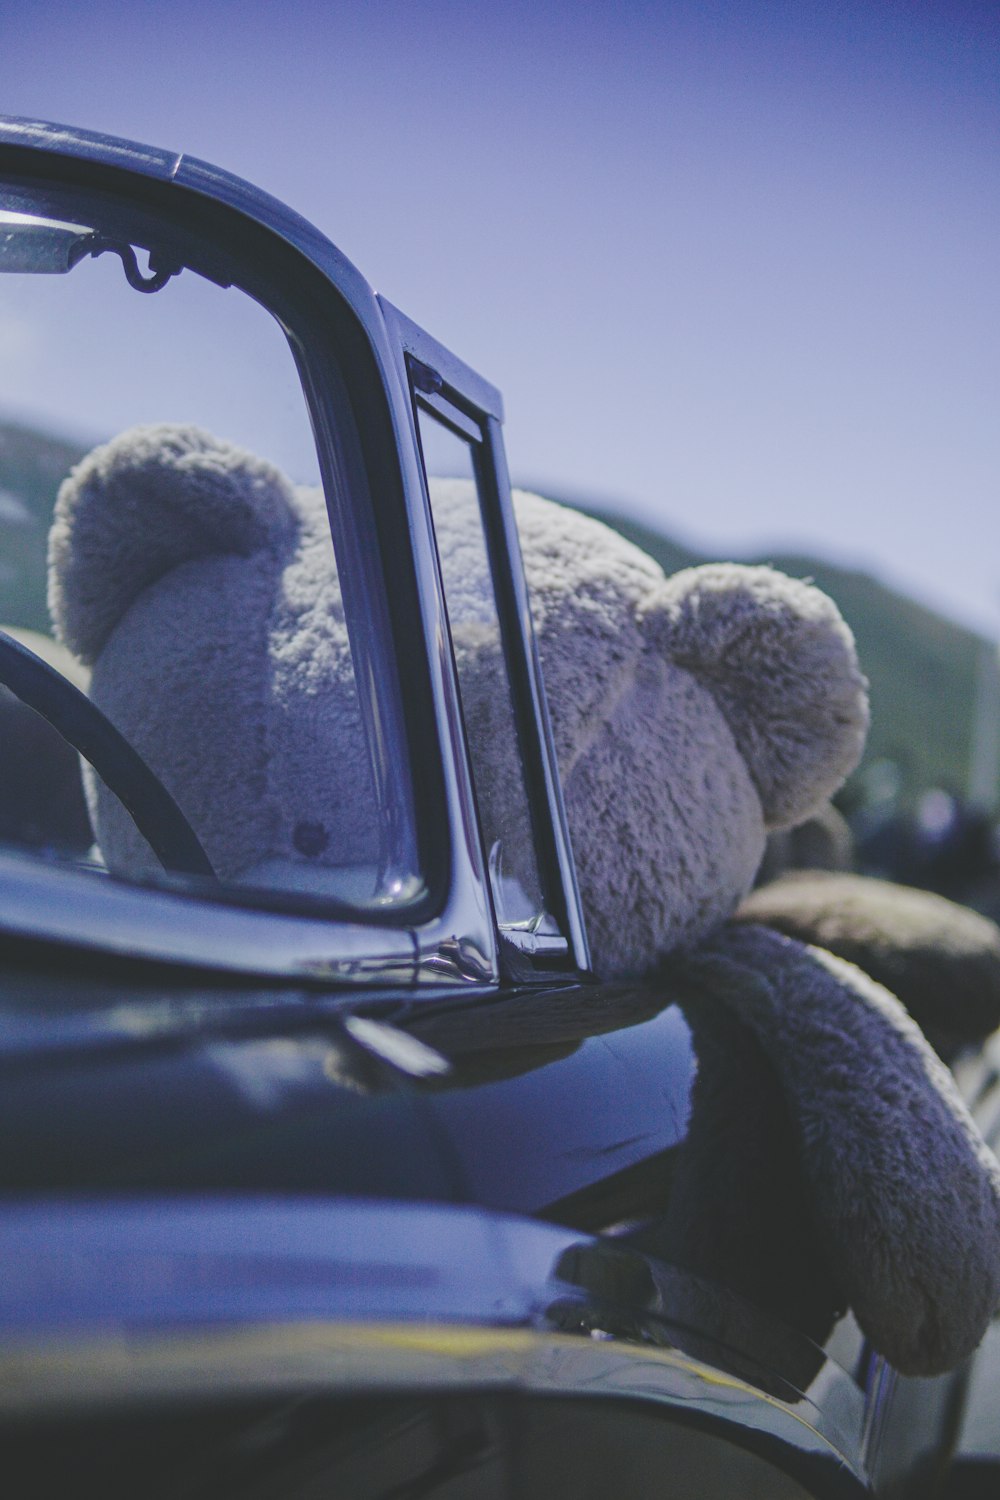 jouet en peluche ours brun grandeur nature à l’intérieur d’une voiture noire